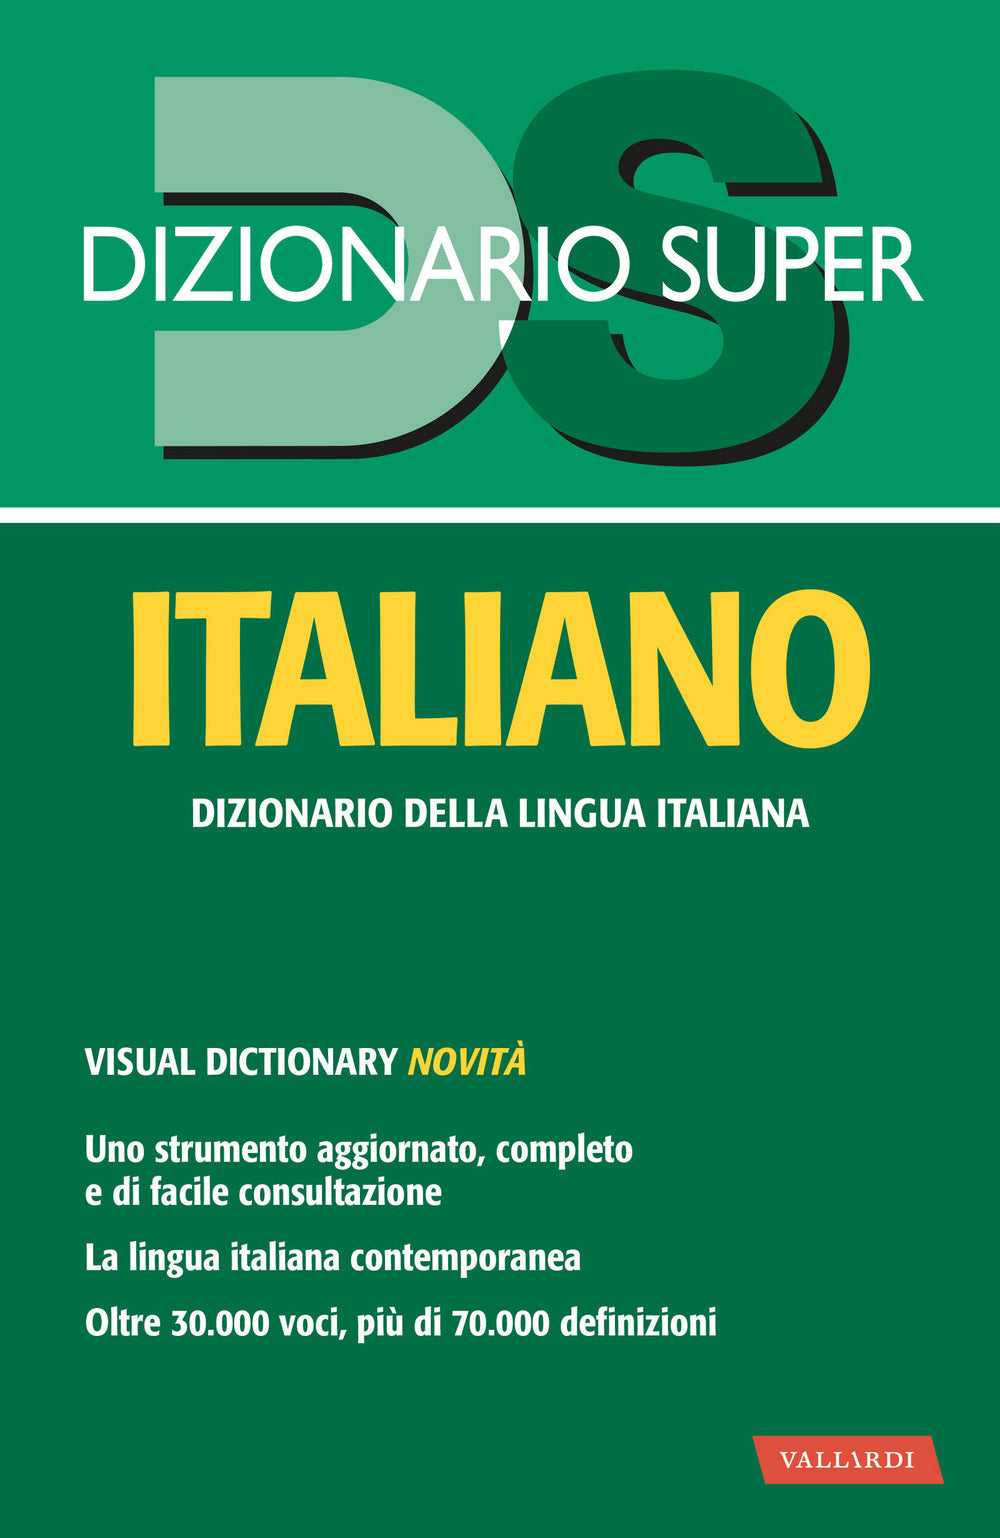 Dizionario italiano.